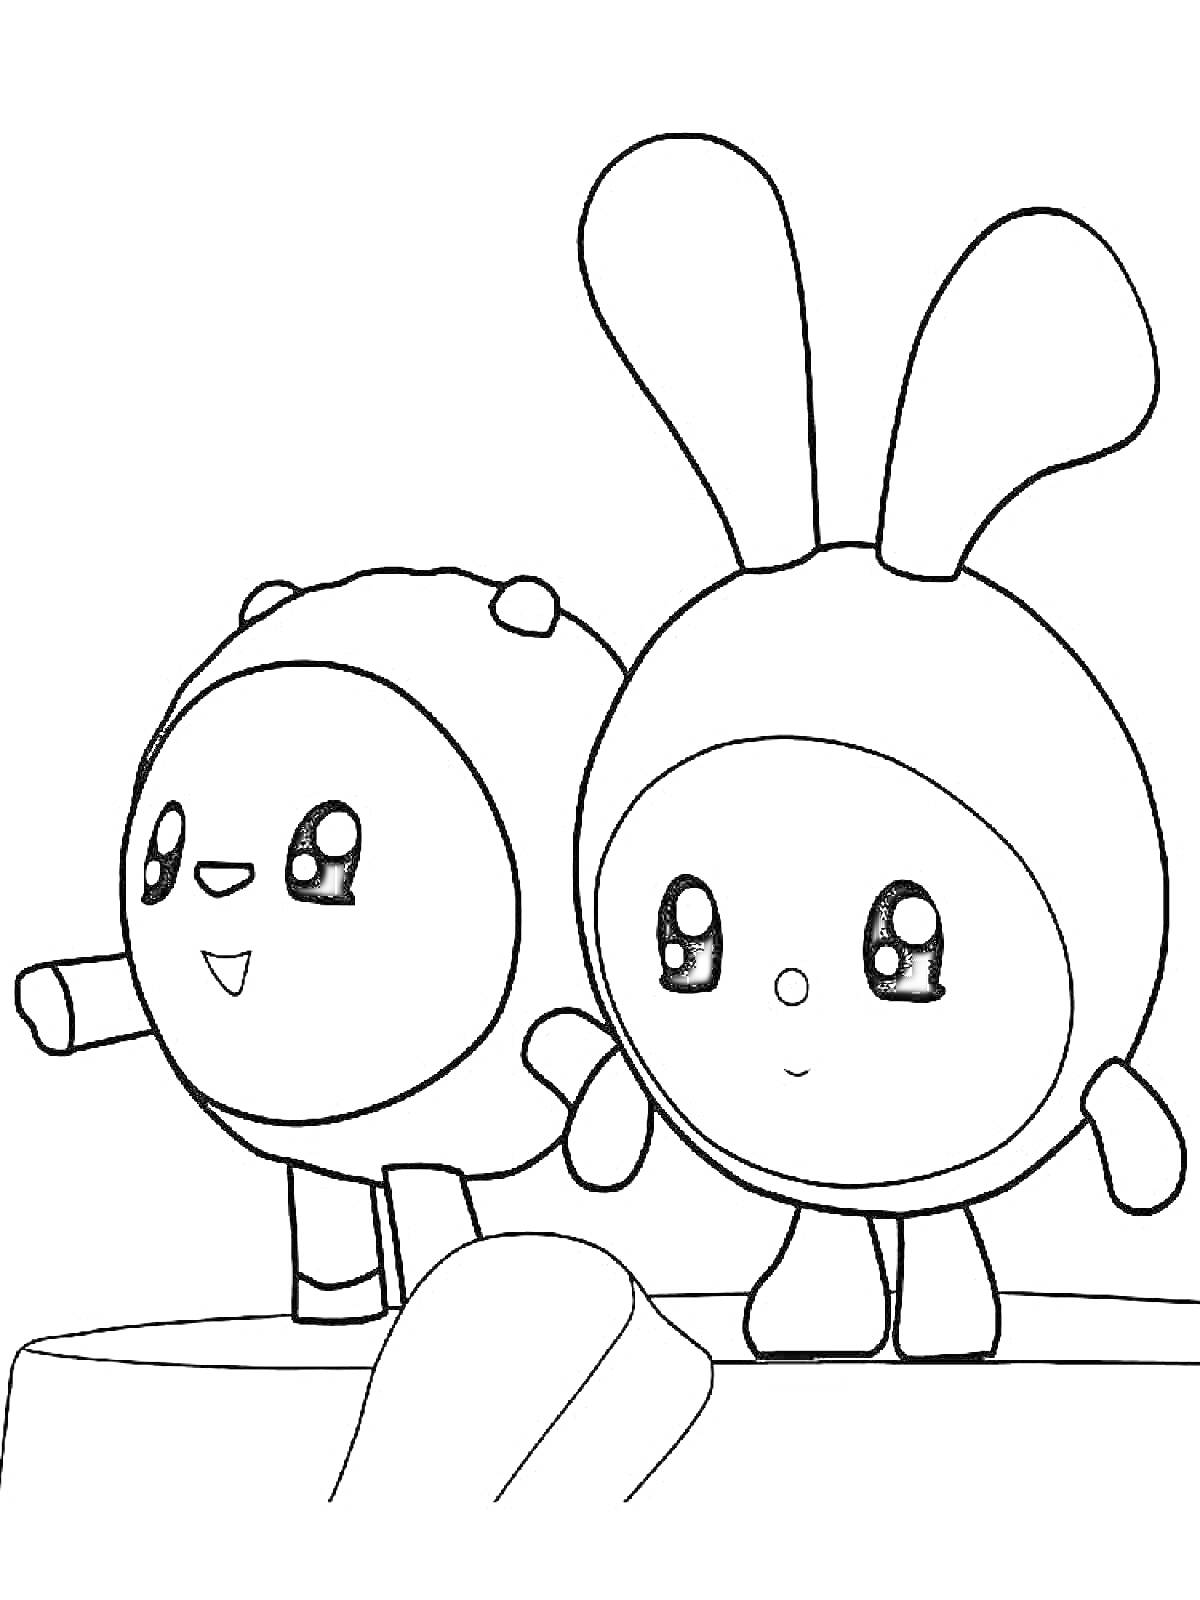 Раскраска Два персонажа Малышарики на возвышении